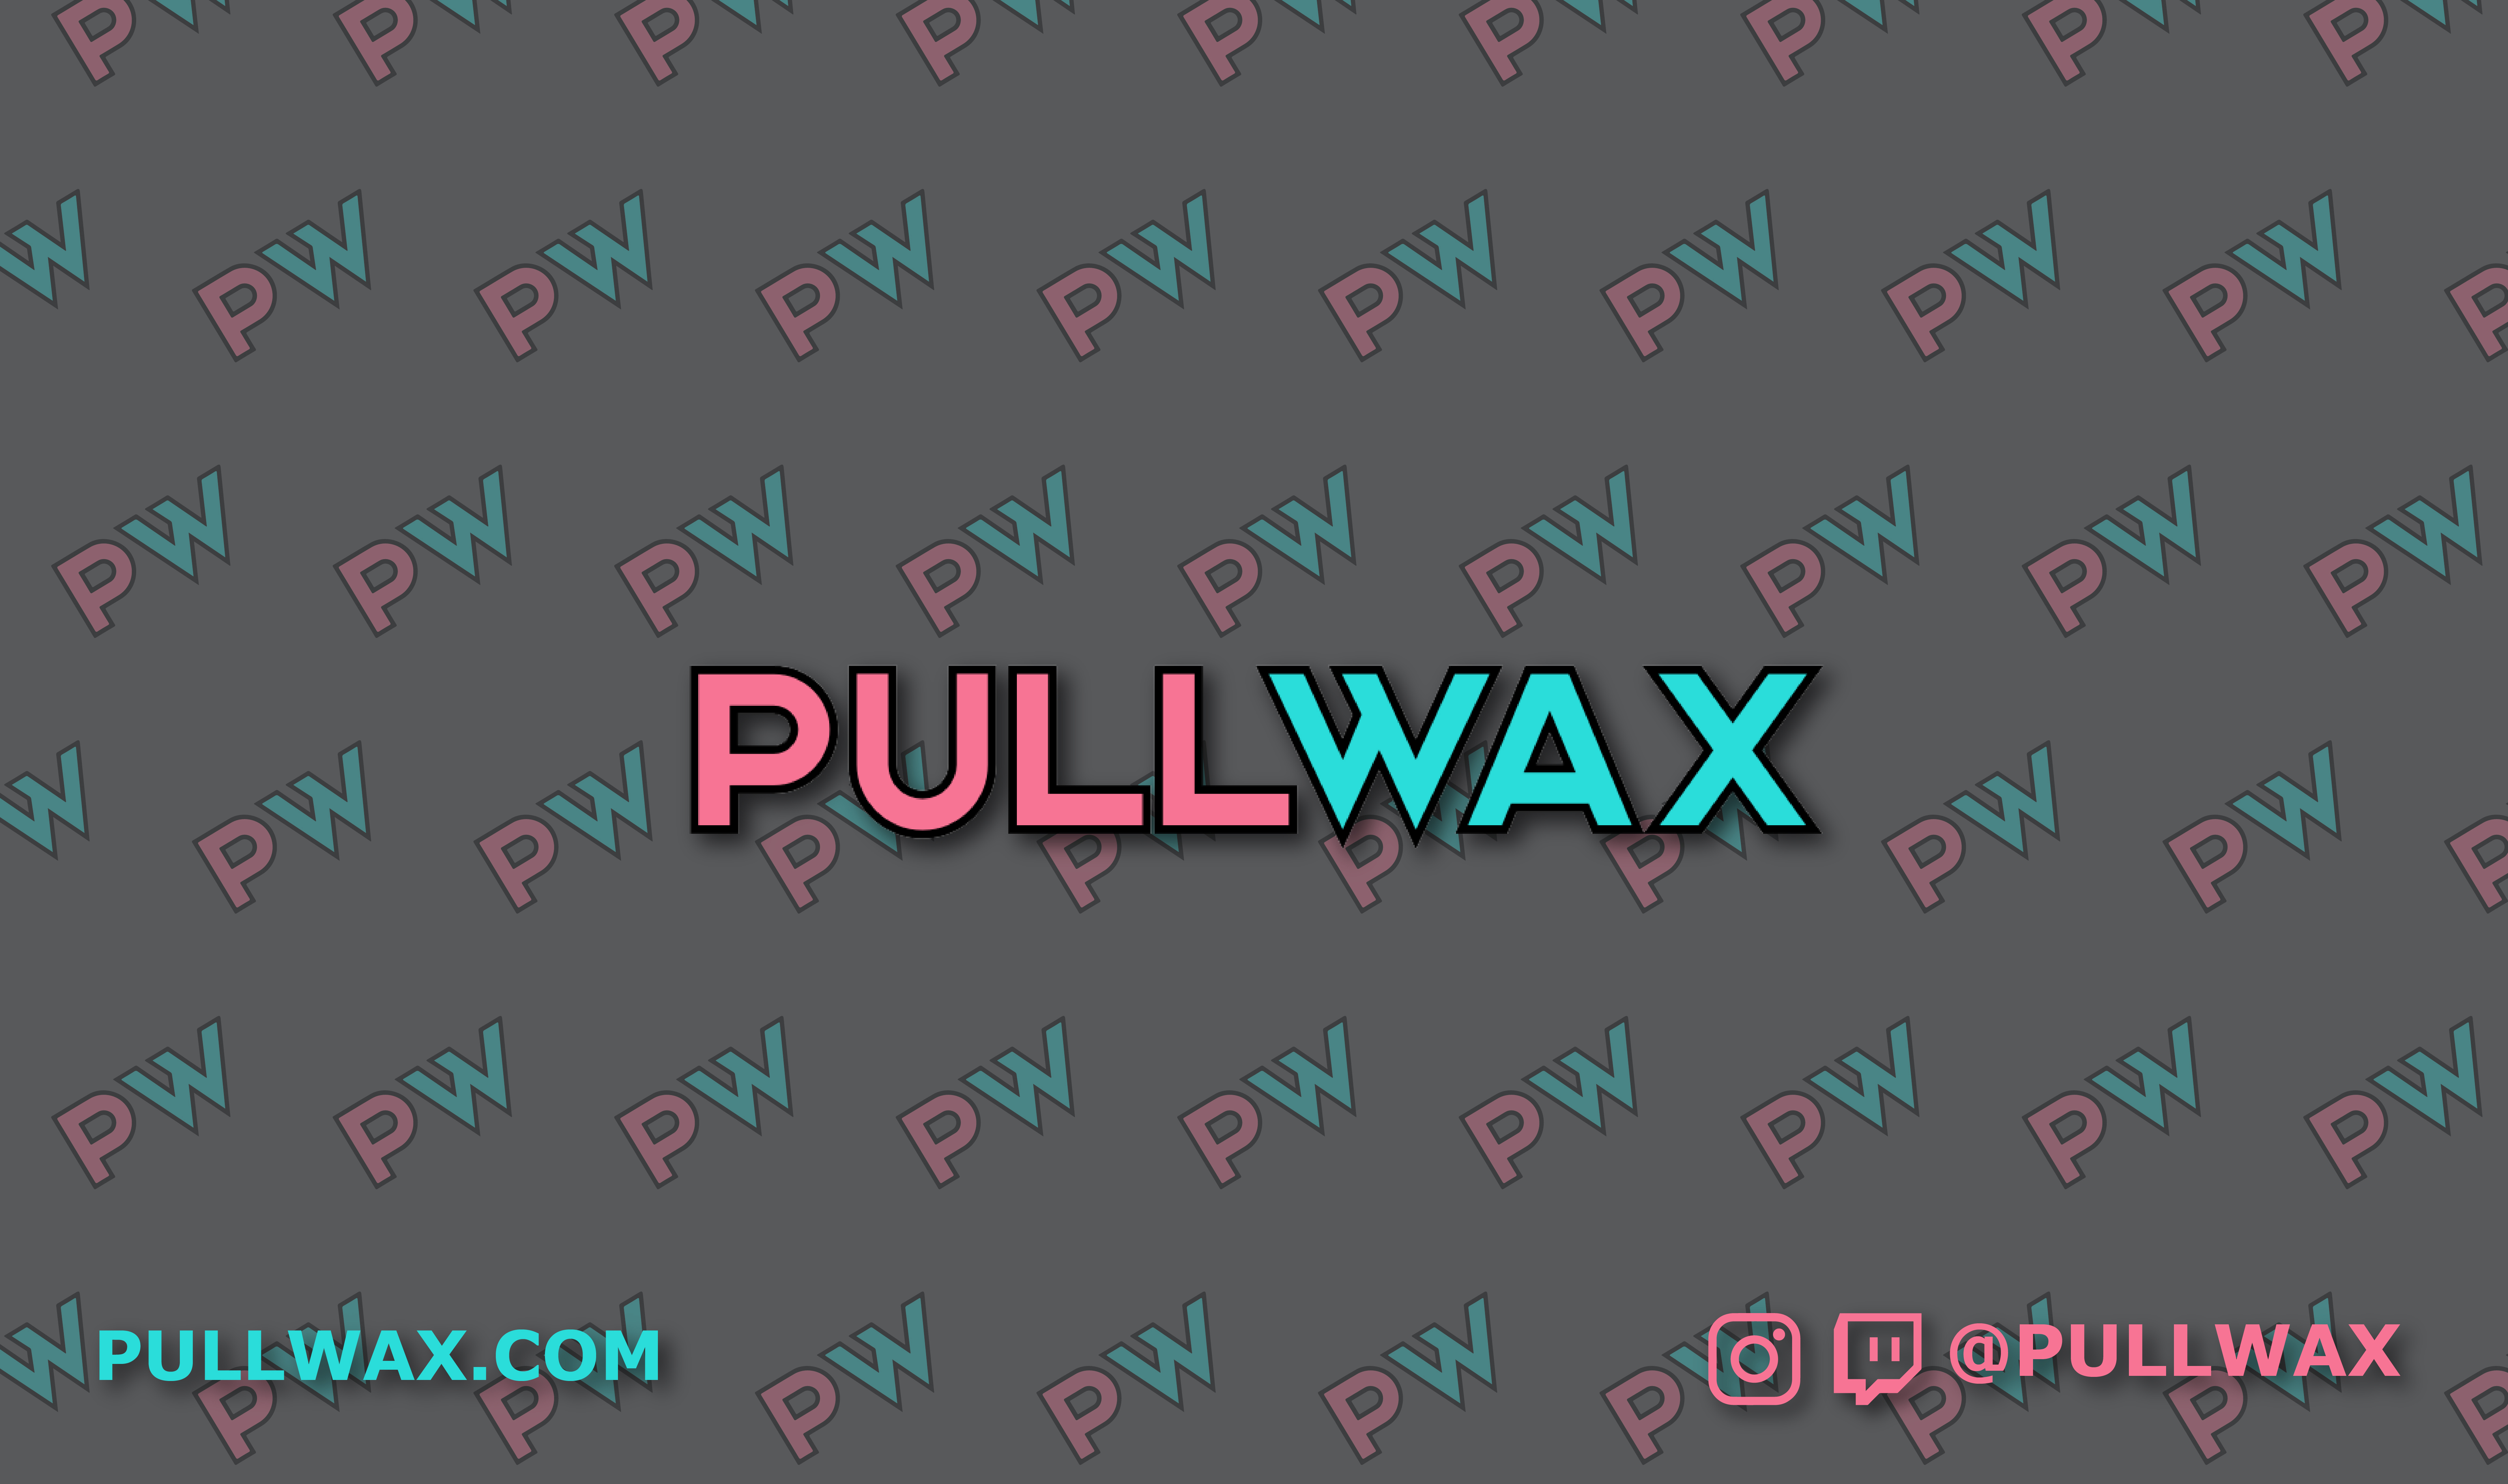 pullwax_print_pullwax2_pullwax